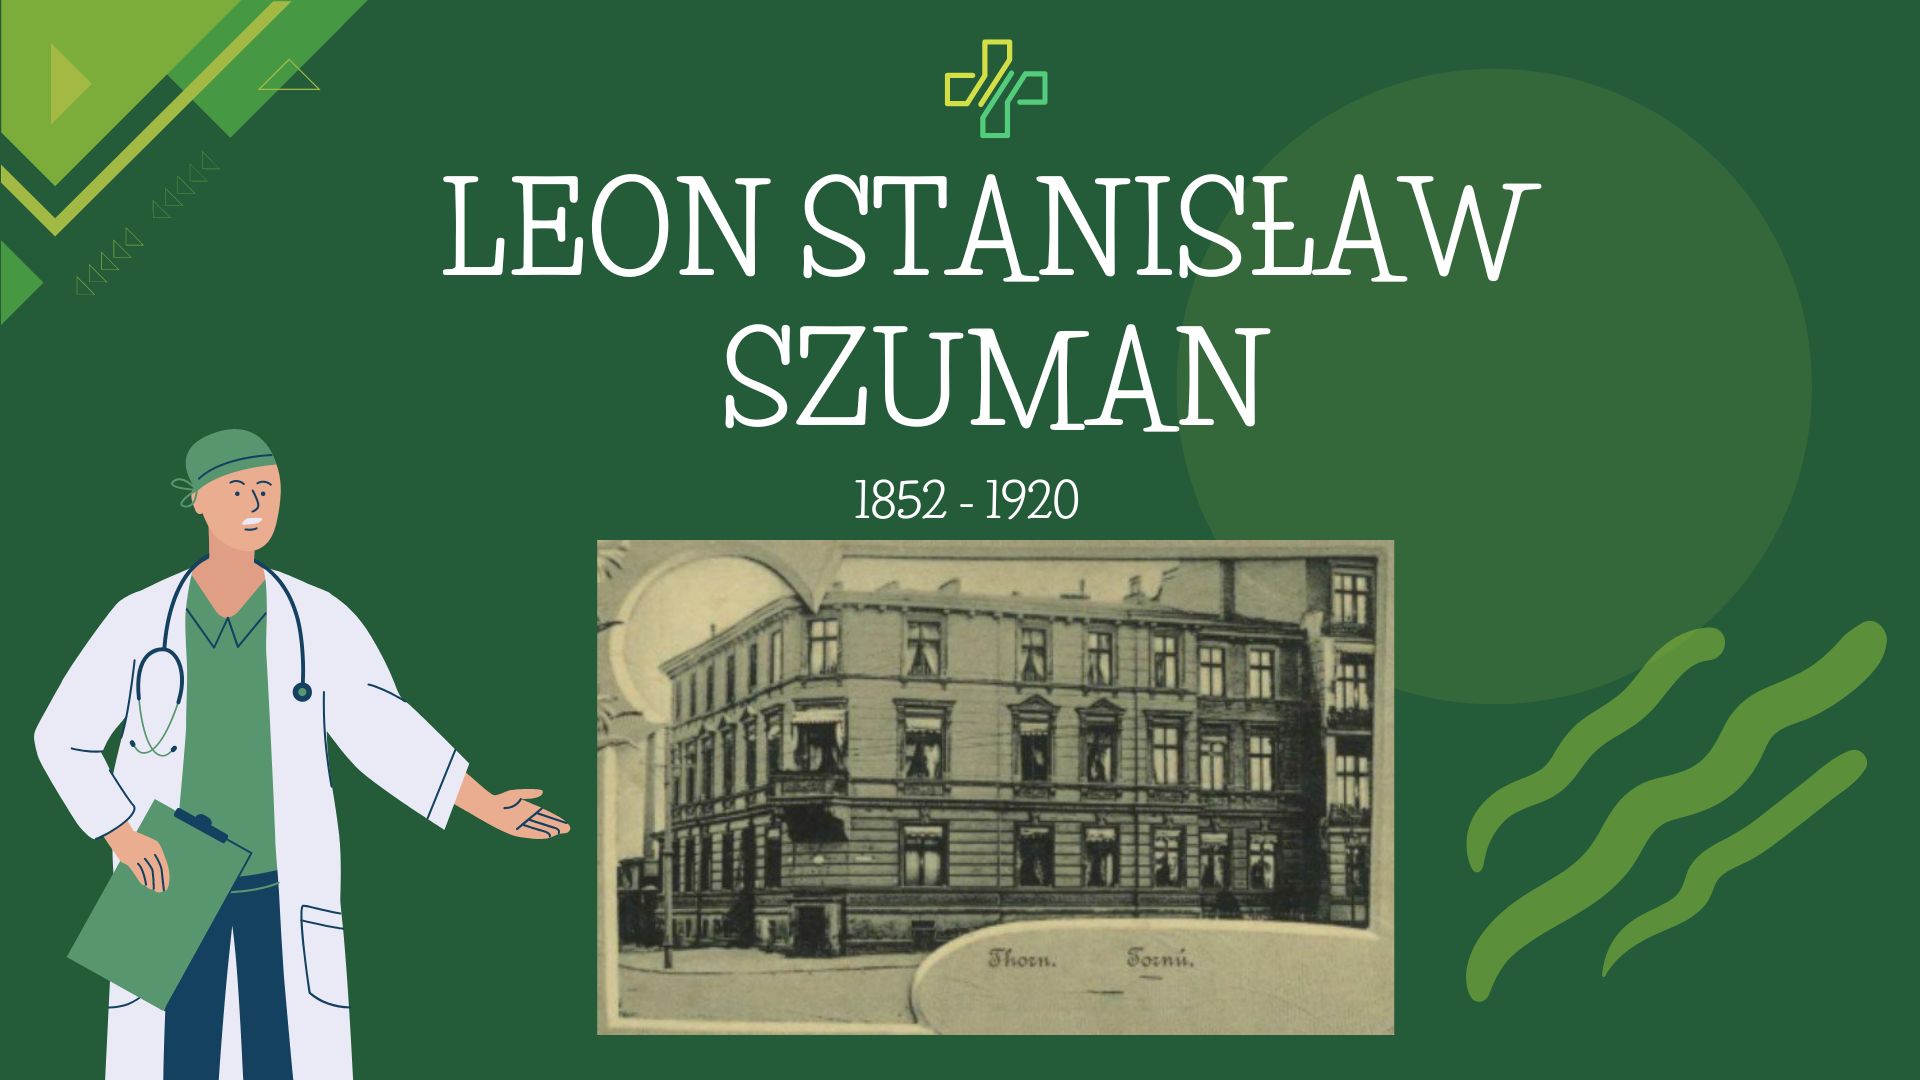 Na zielonym tle napis: Leon Stanisław Szuman 1852-1920. Poniżej napisu zdjęcie dawnej kliniki doktora szumana.